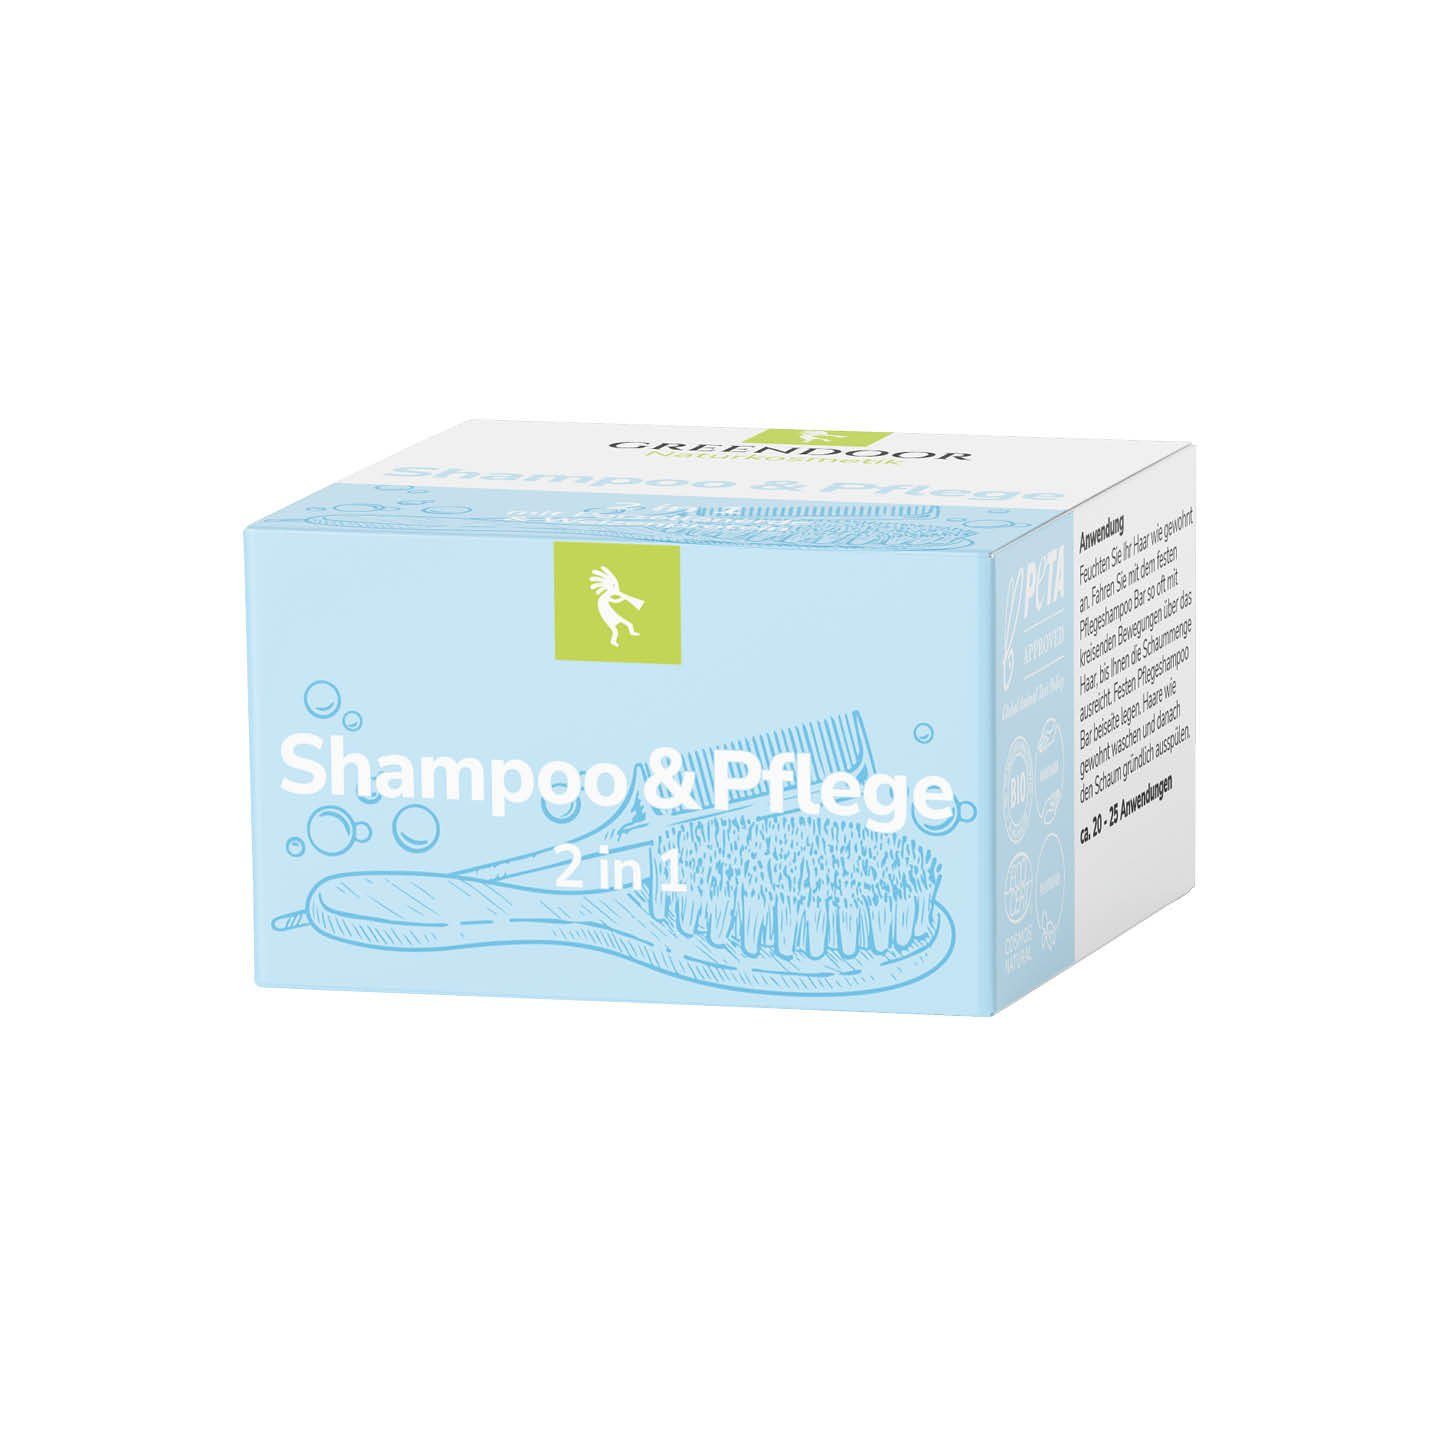 GREENDOOR Festes Haarshampoo 2 in 1 Shampoo und Pflege